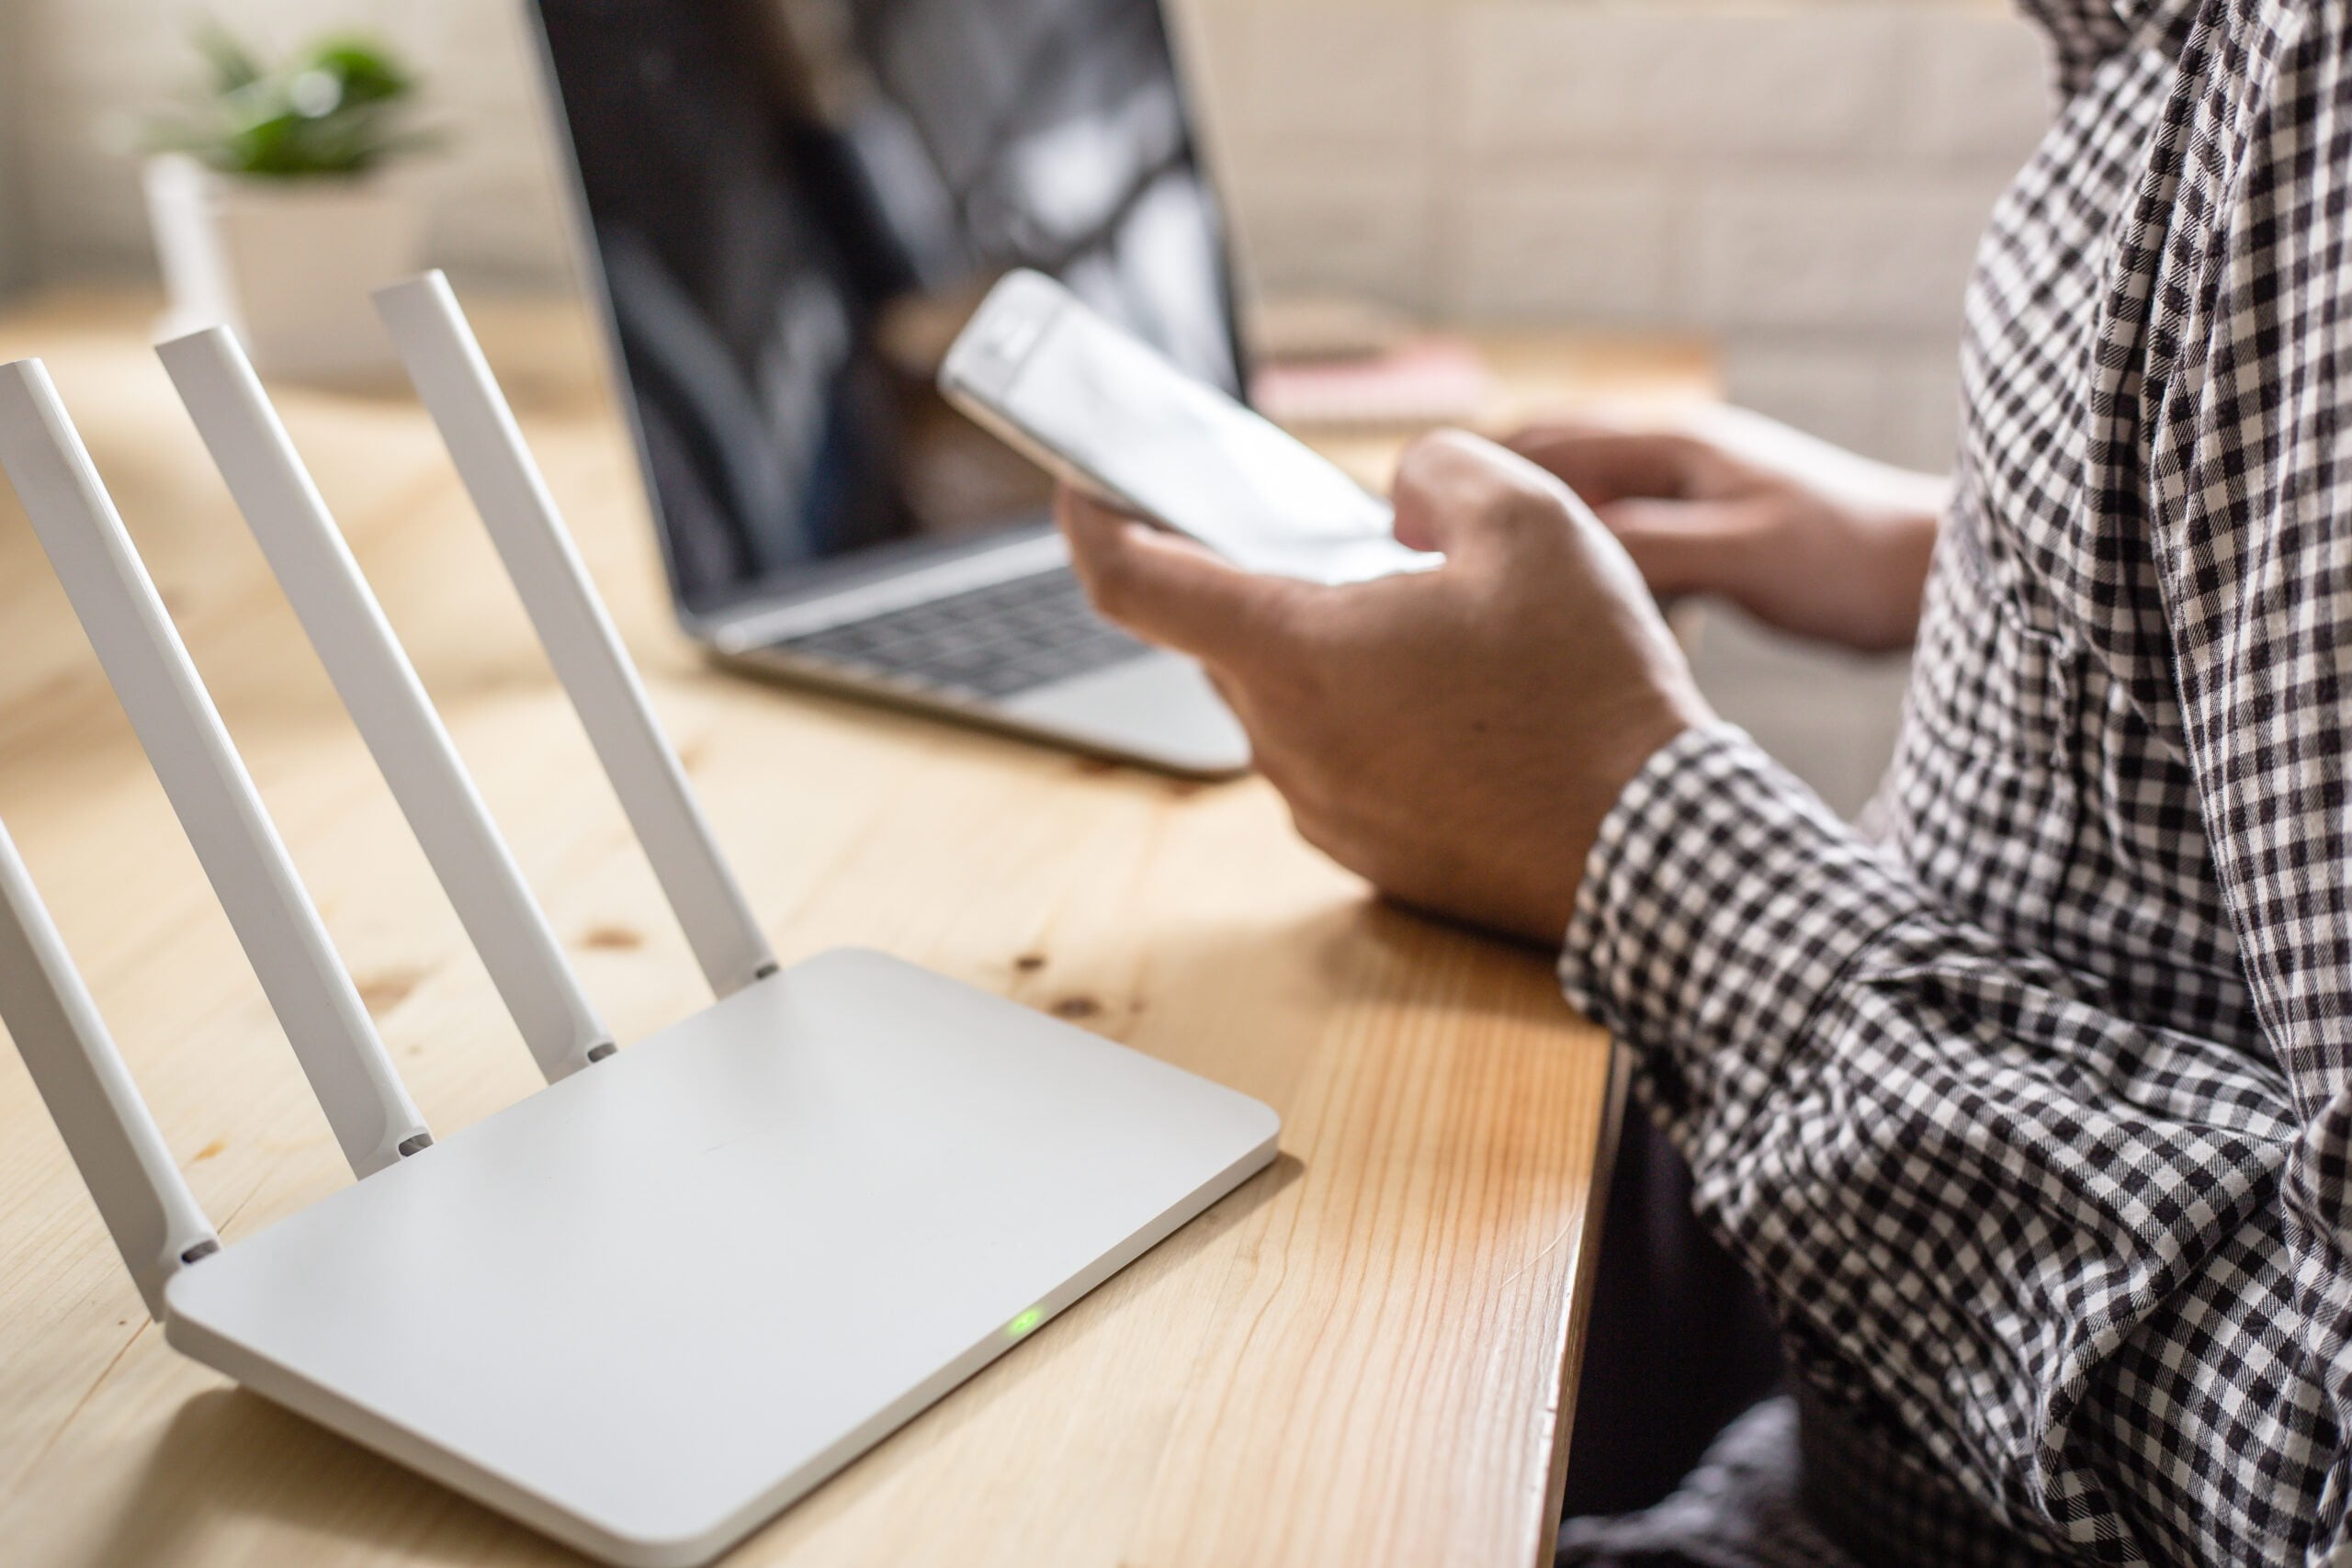 biały router z czterema antenami stojący na biurku, obok laptop, przed biurkiem mężczyzna siedzący z telefonem w ręce